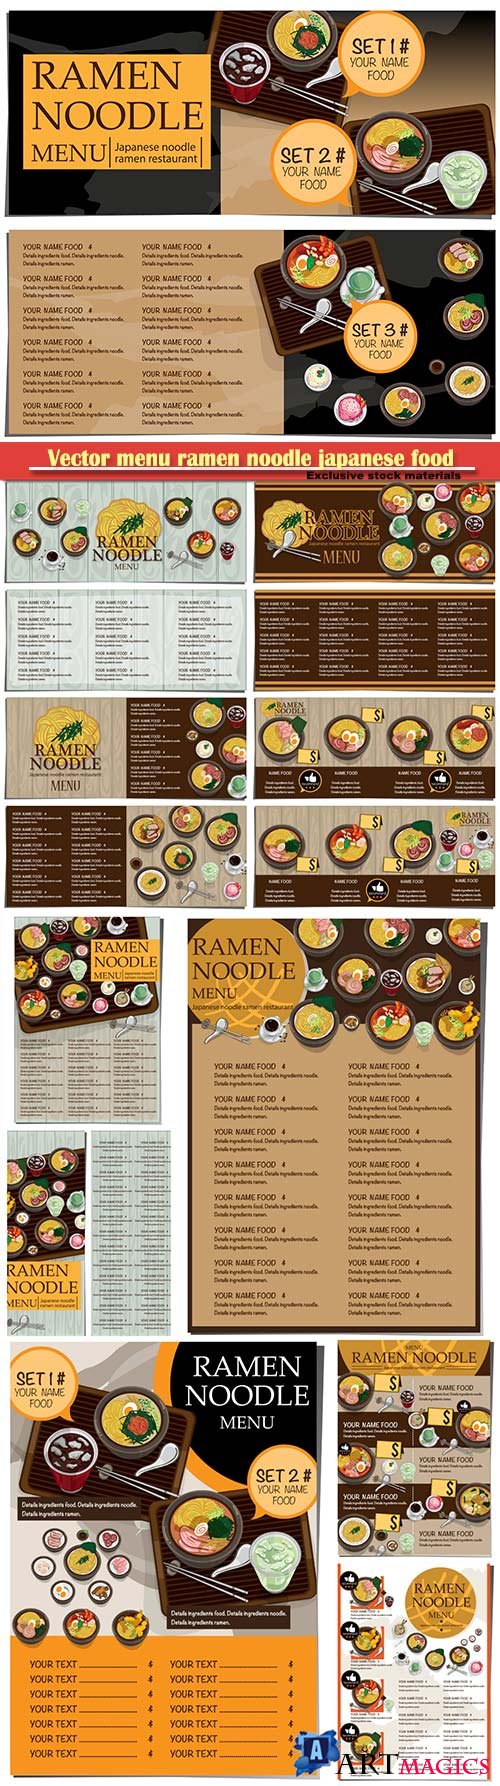 Vector menu ramen noodle japanese food template design